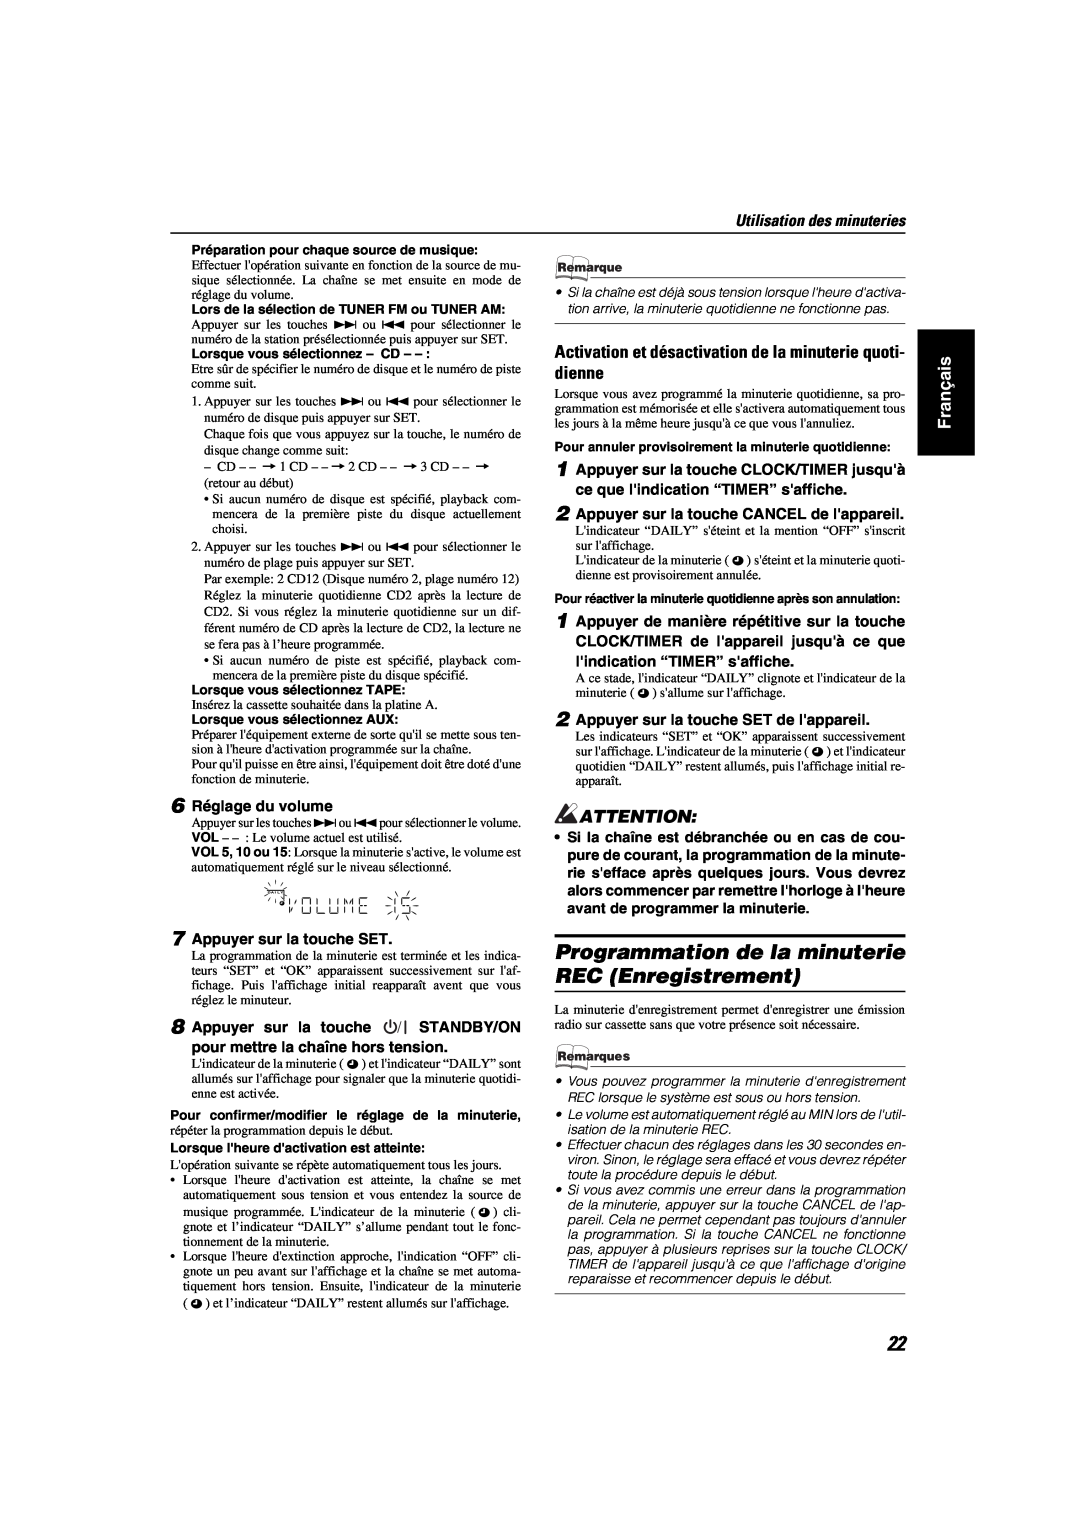 JVC MX-KA6 manual Programmation de la minuterie REC Enregistrement, Utilisation des minuteries, Français 